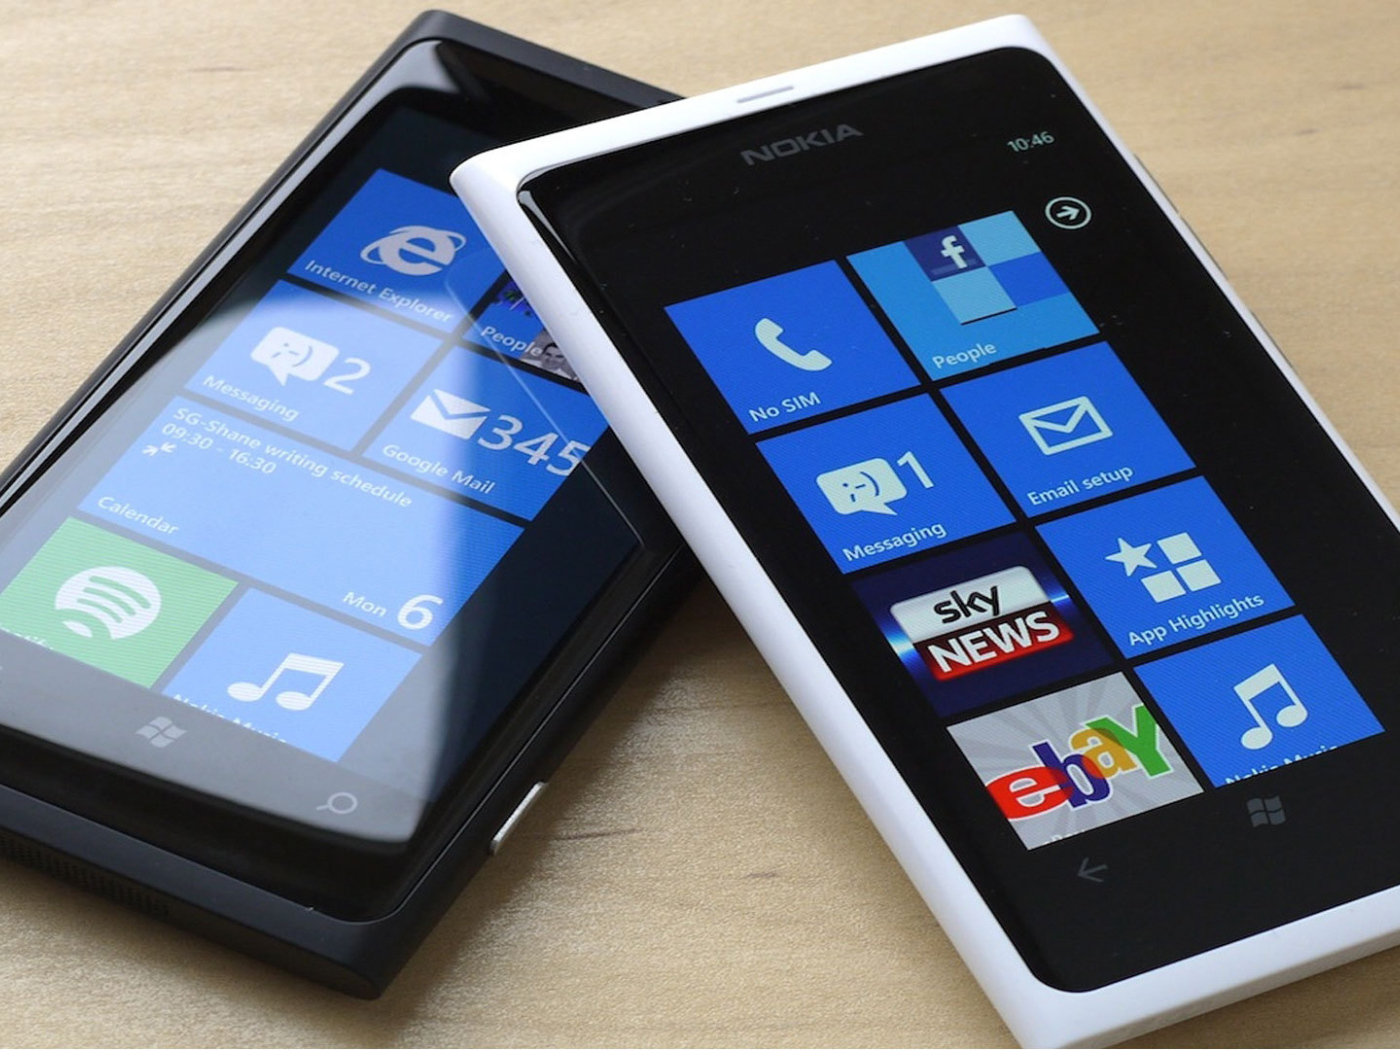 Чёрная и белая Nokia Lumia 800